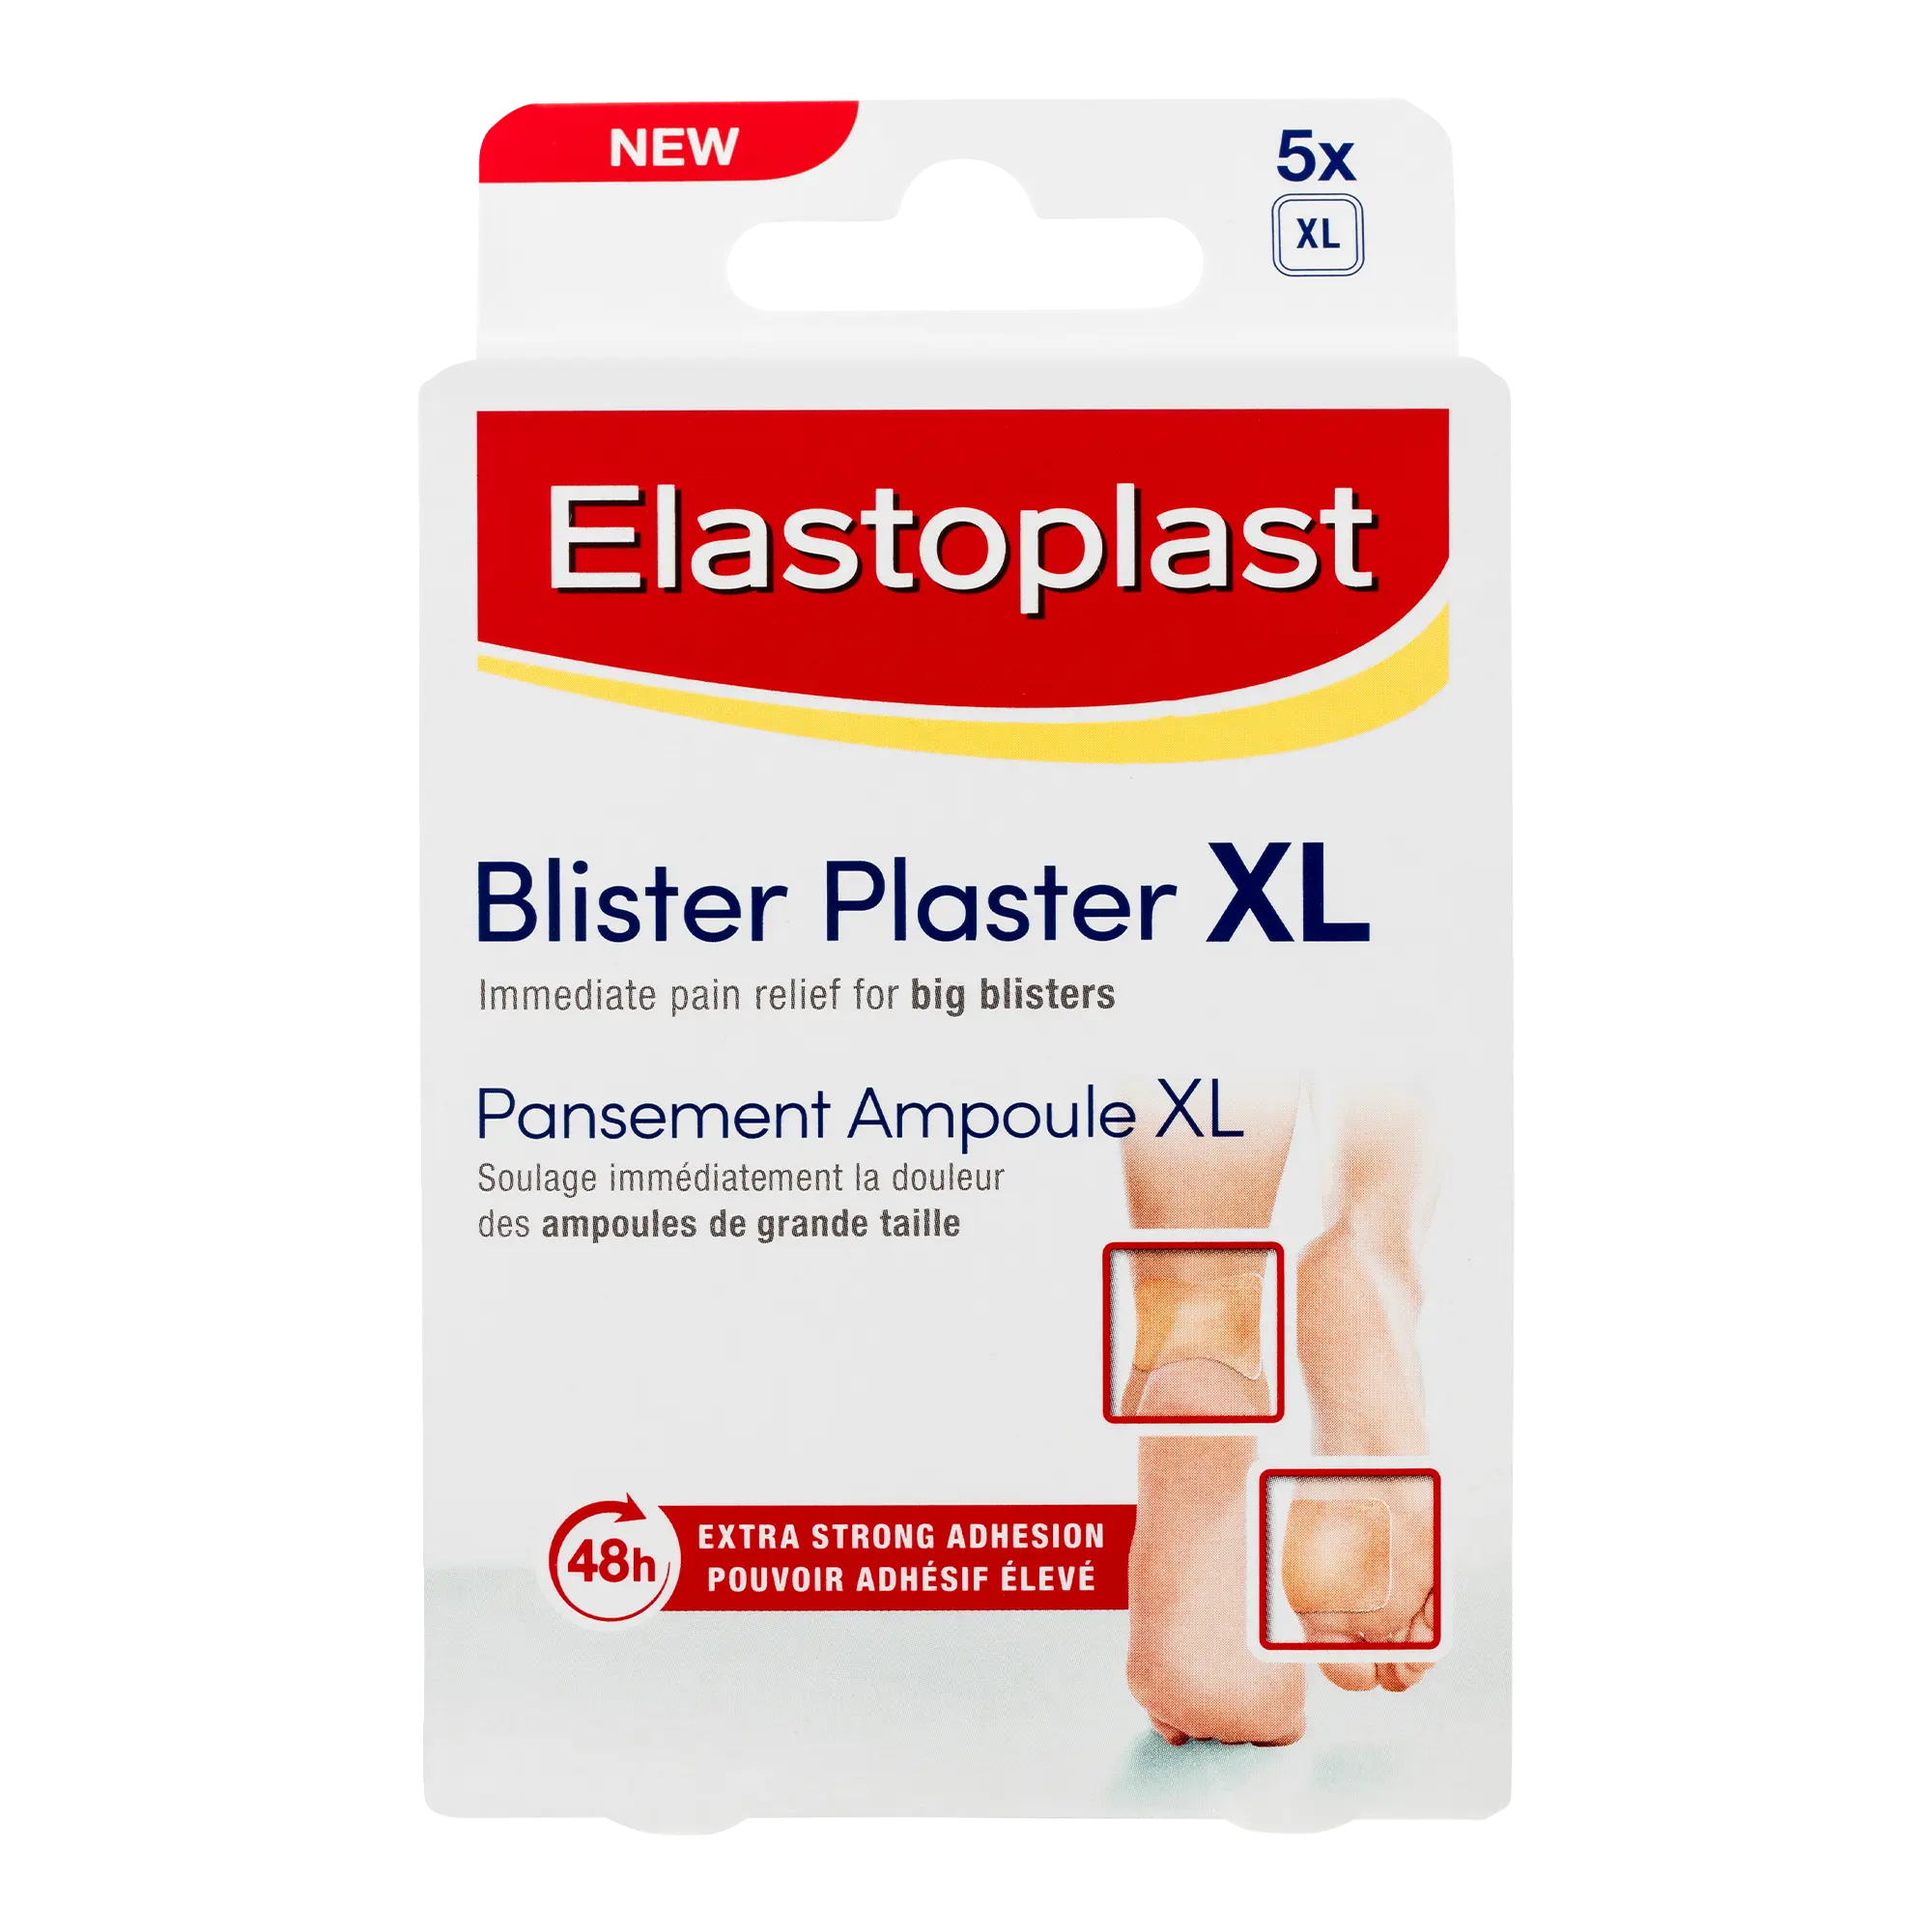 BLISTER PLASTER XL